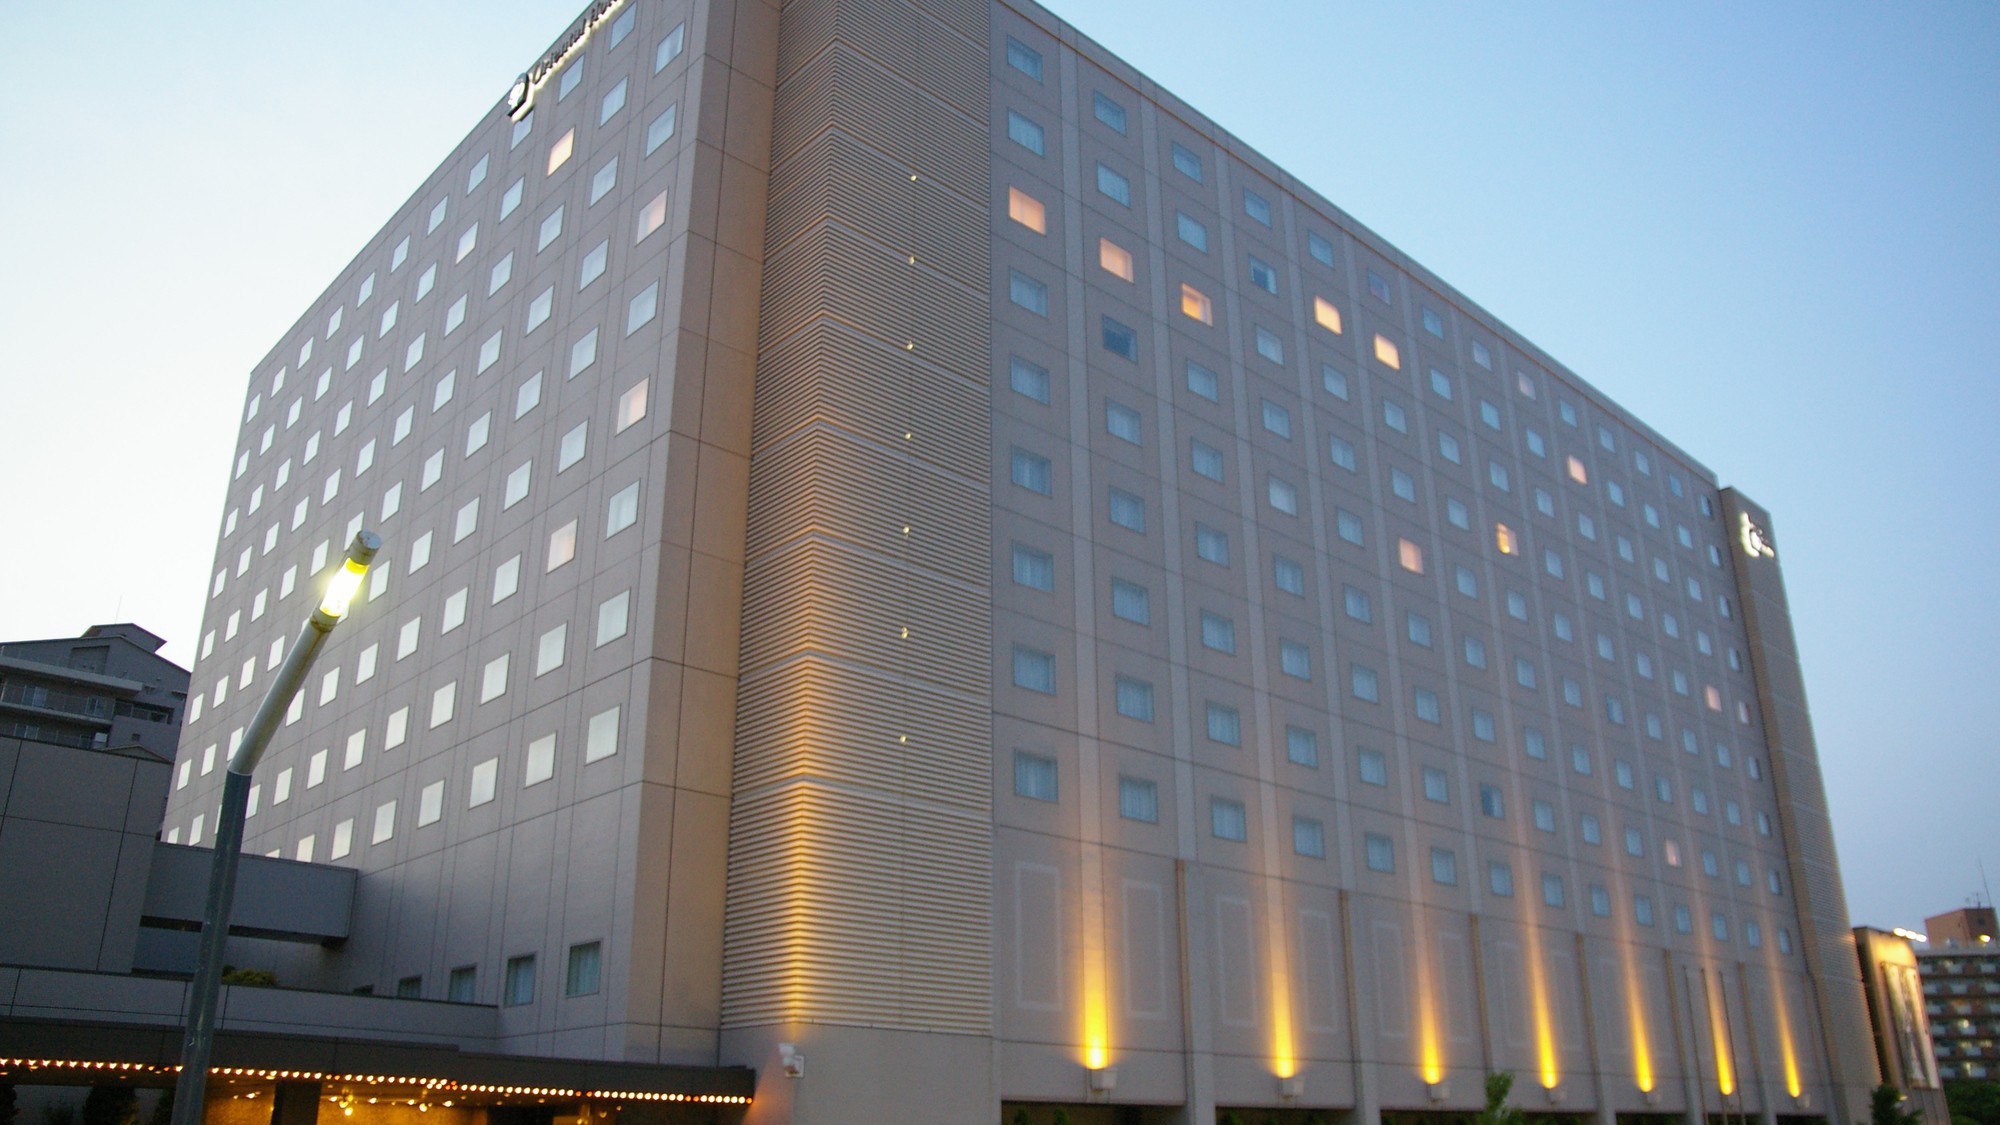 オリエンタルホテル東京ベイ 格安予約 宿泊プラン料金比較 トラベルコ